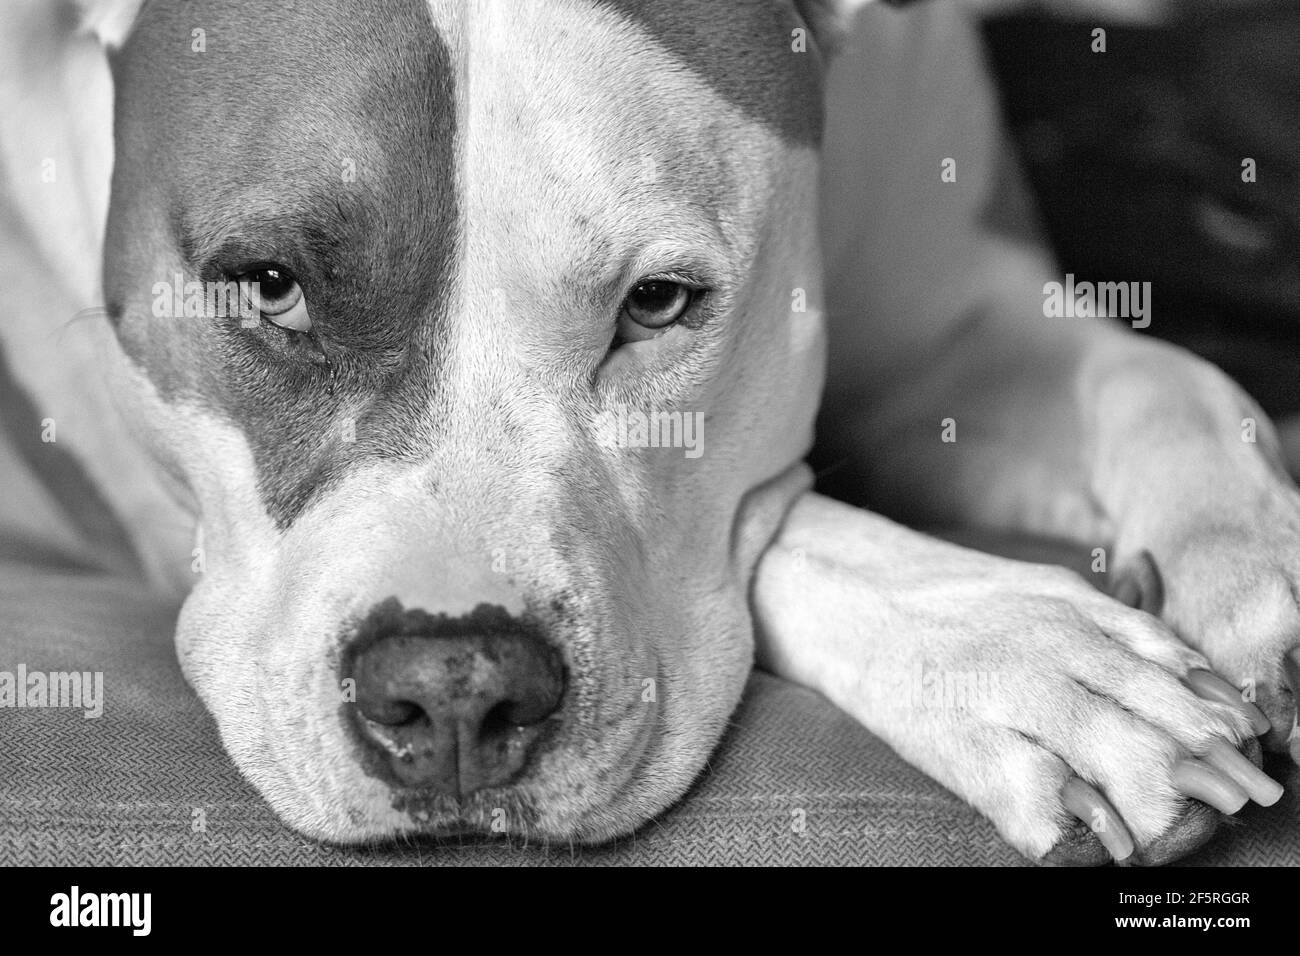 Un chien mixte (American Staffordshire Pit Bull Terrier et American Pit Bull Terrier) (Canis lupus familiaris) regarde directement dans la caméra Banque D'Images